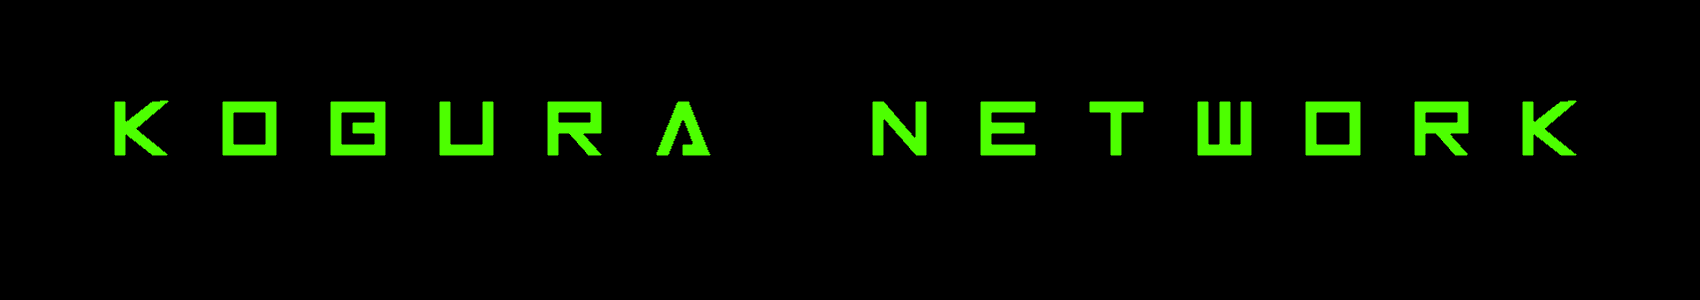 Banner for Kobura Network server